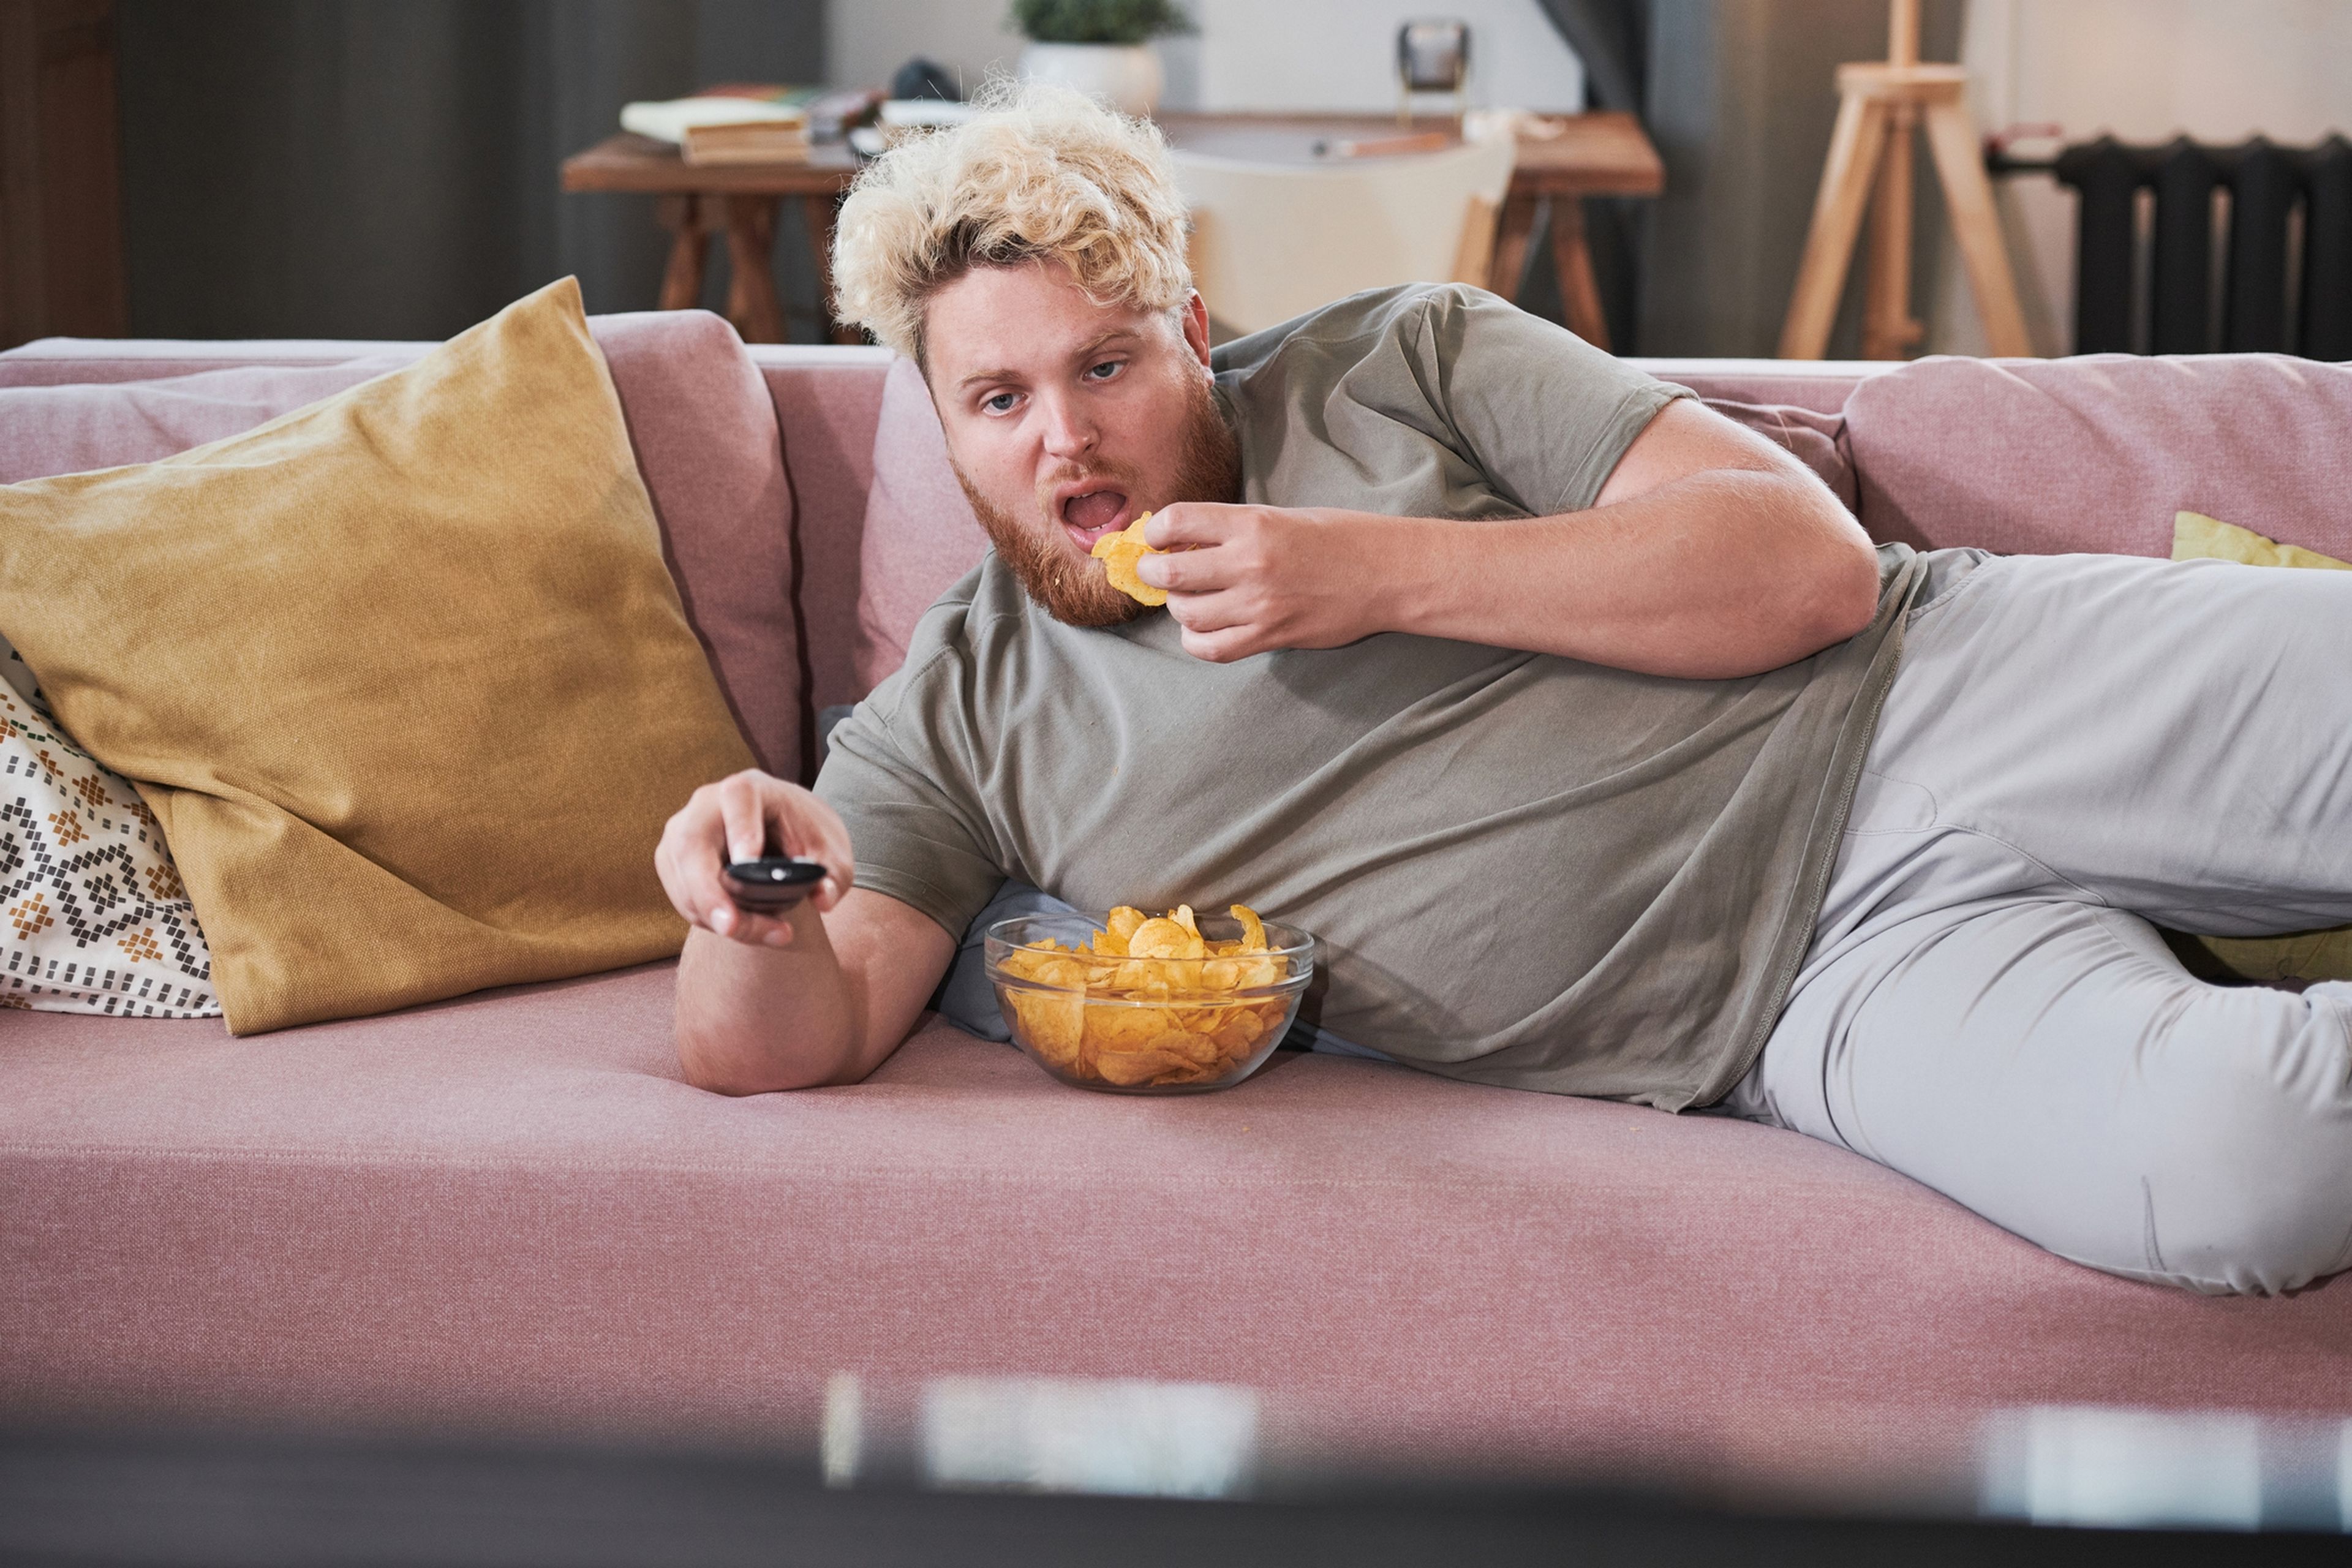 Las teles de Sony podrían monitorear tu salud analizando la comida y bebida que comes mientras ves Netflix, o la postura en el sillón